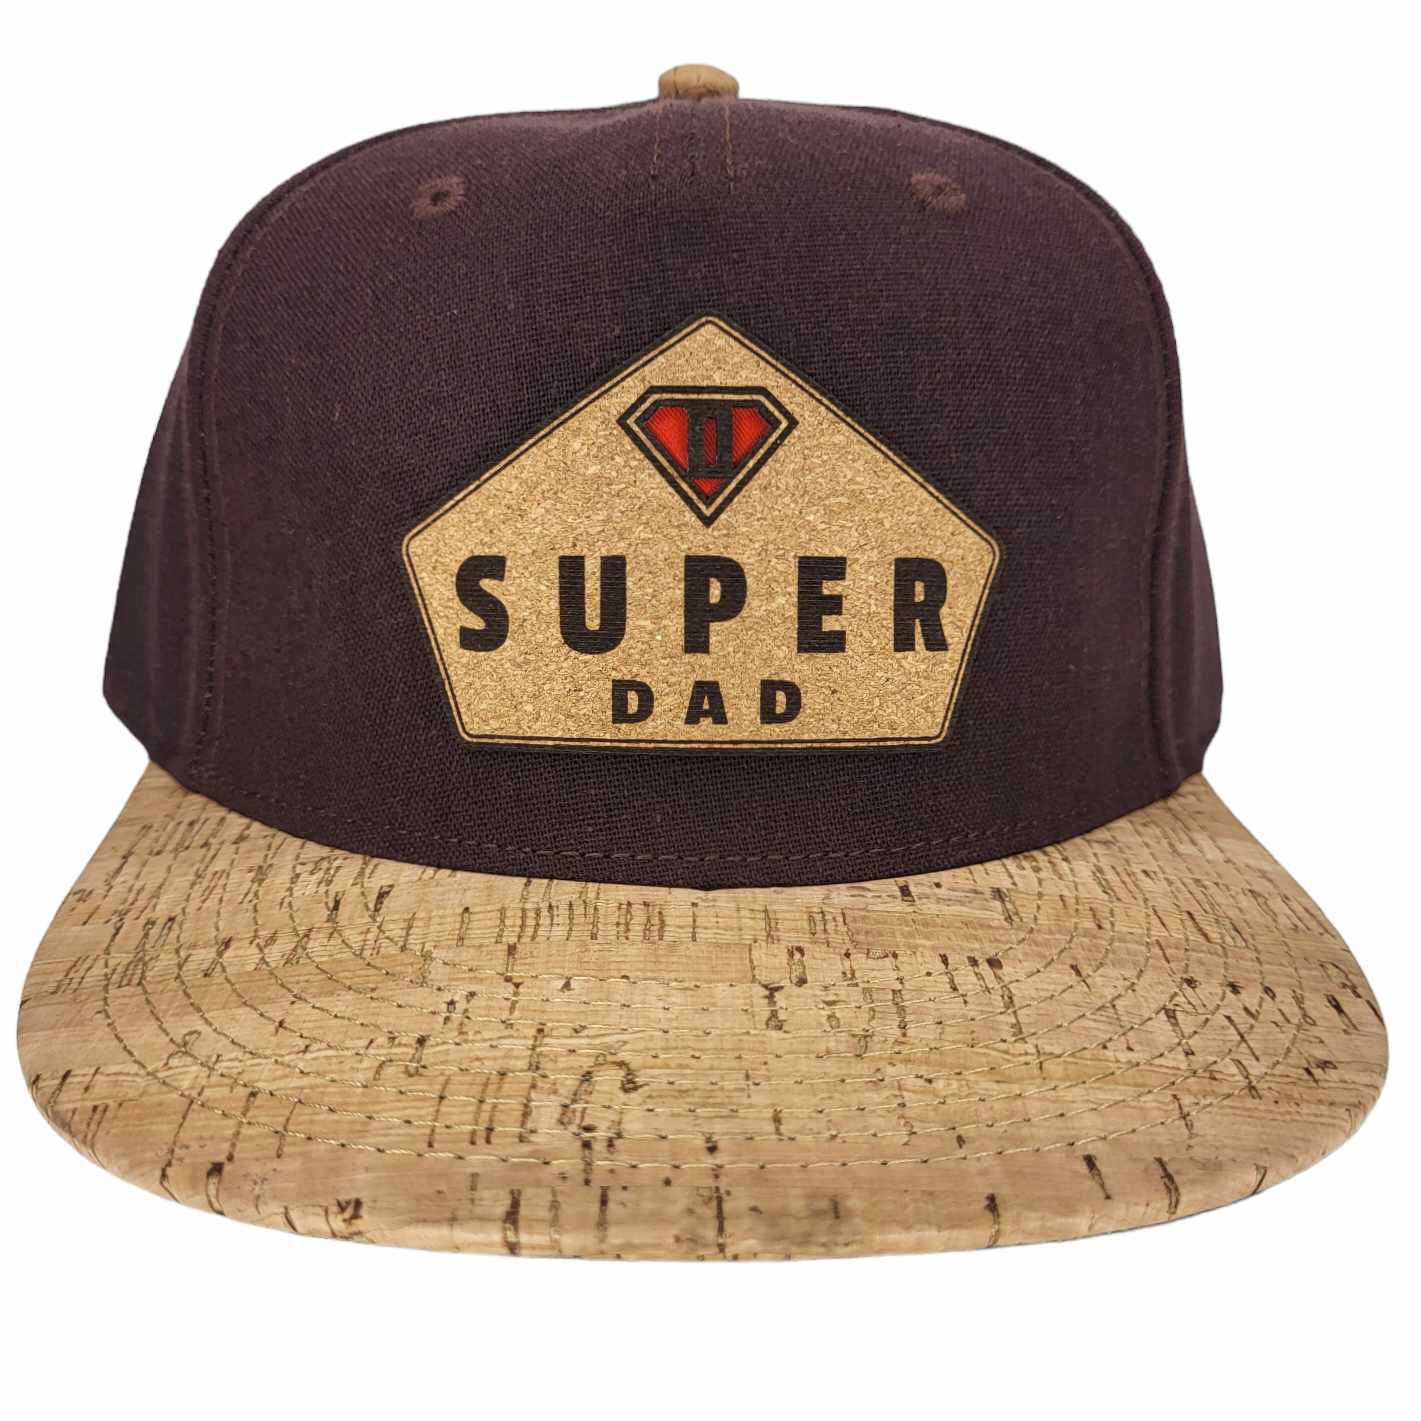 Super Dad Cork Hat